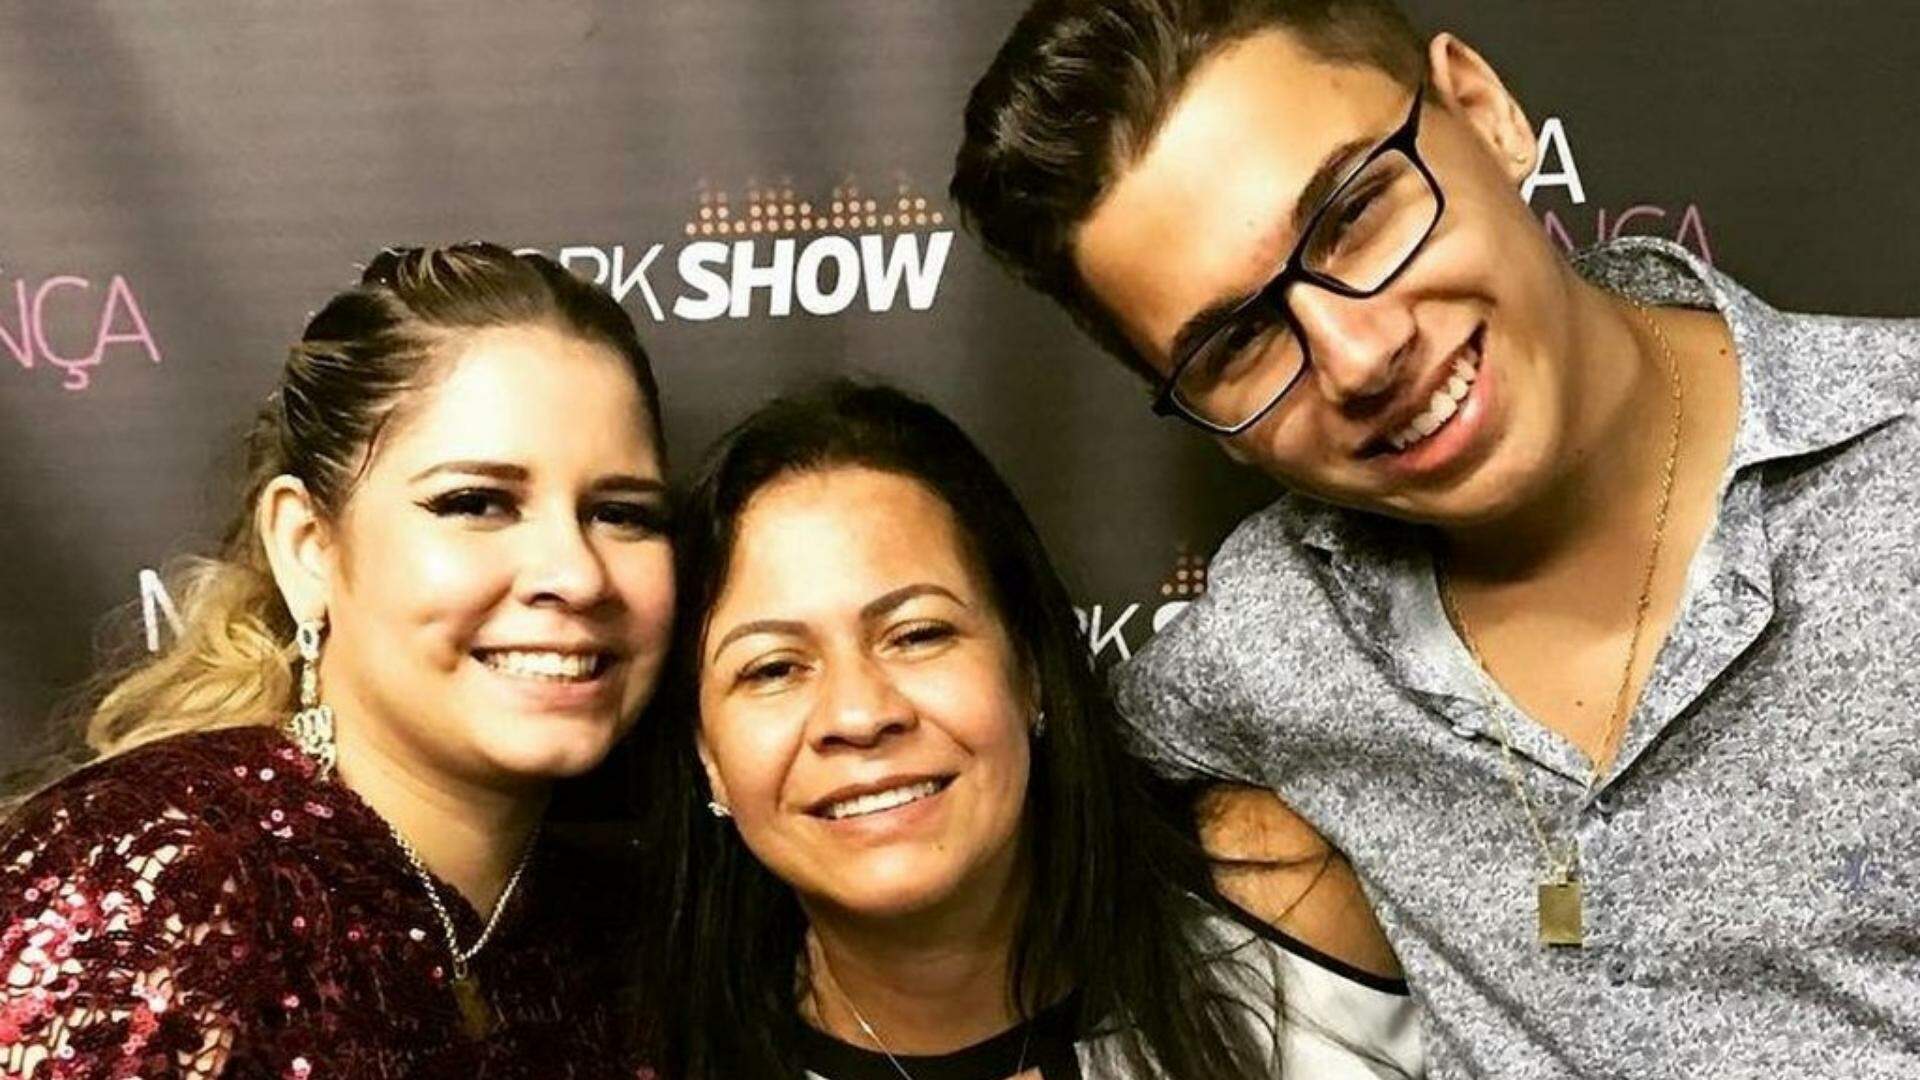 Após fim da dupla, mãe de Marília Mendonça manda recado ao filho João Gustavo: “Levante a cabeça” - Metropolitana FM